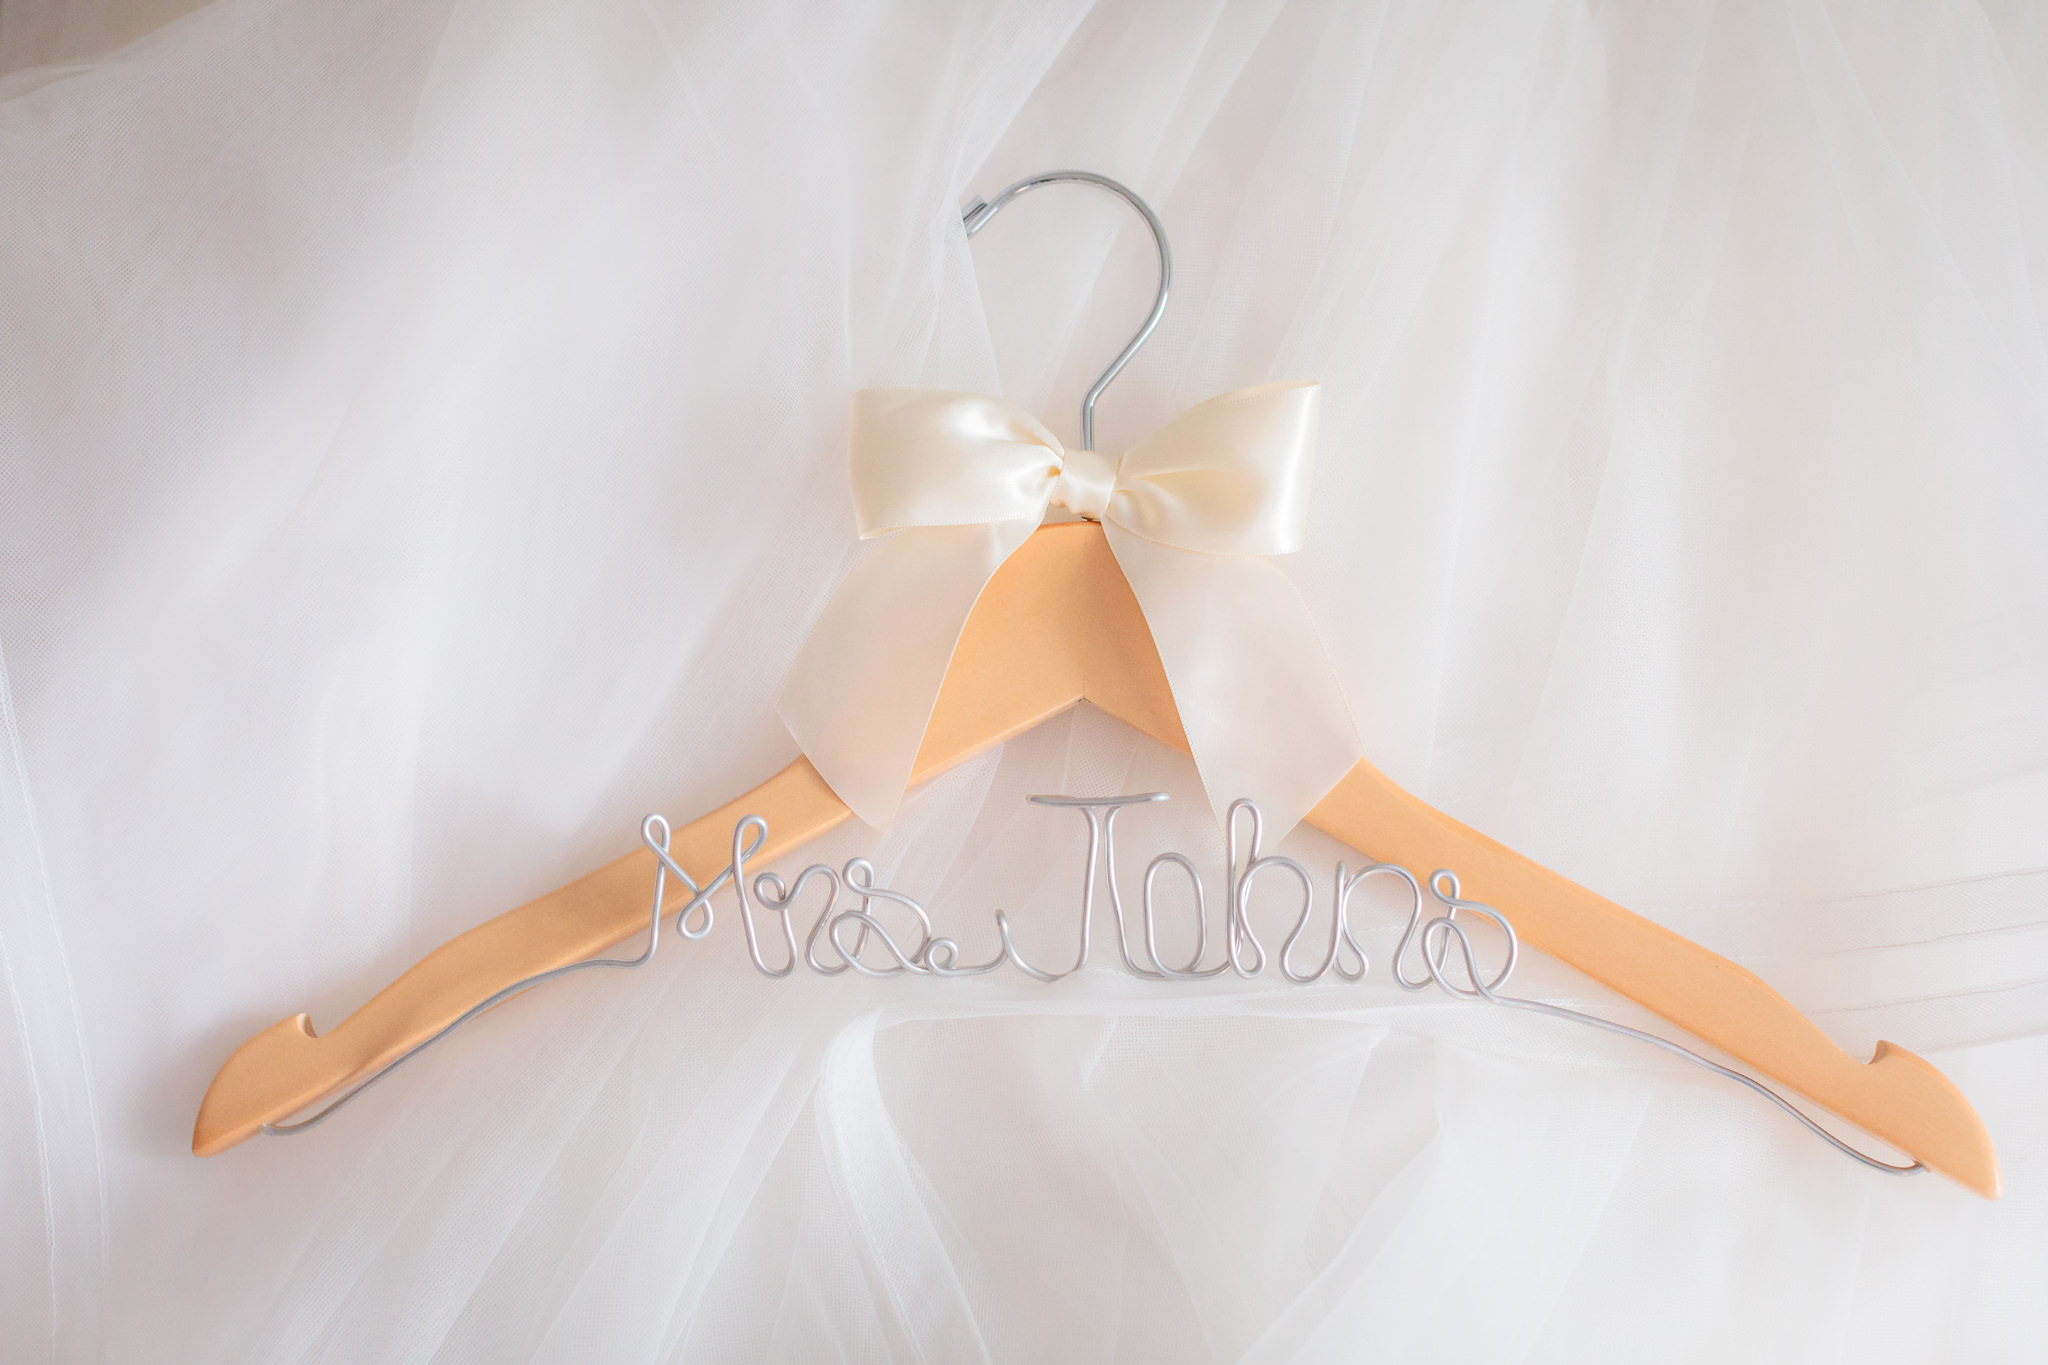 Custom hanger for the bride's gown rests on her white tulle skirt